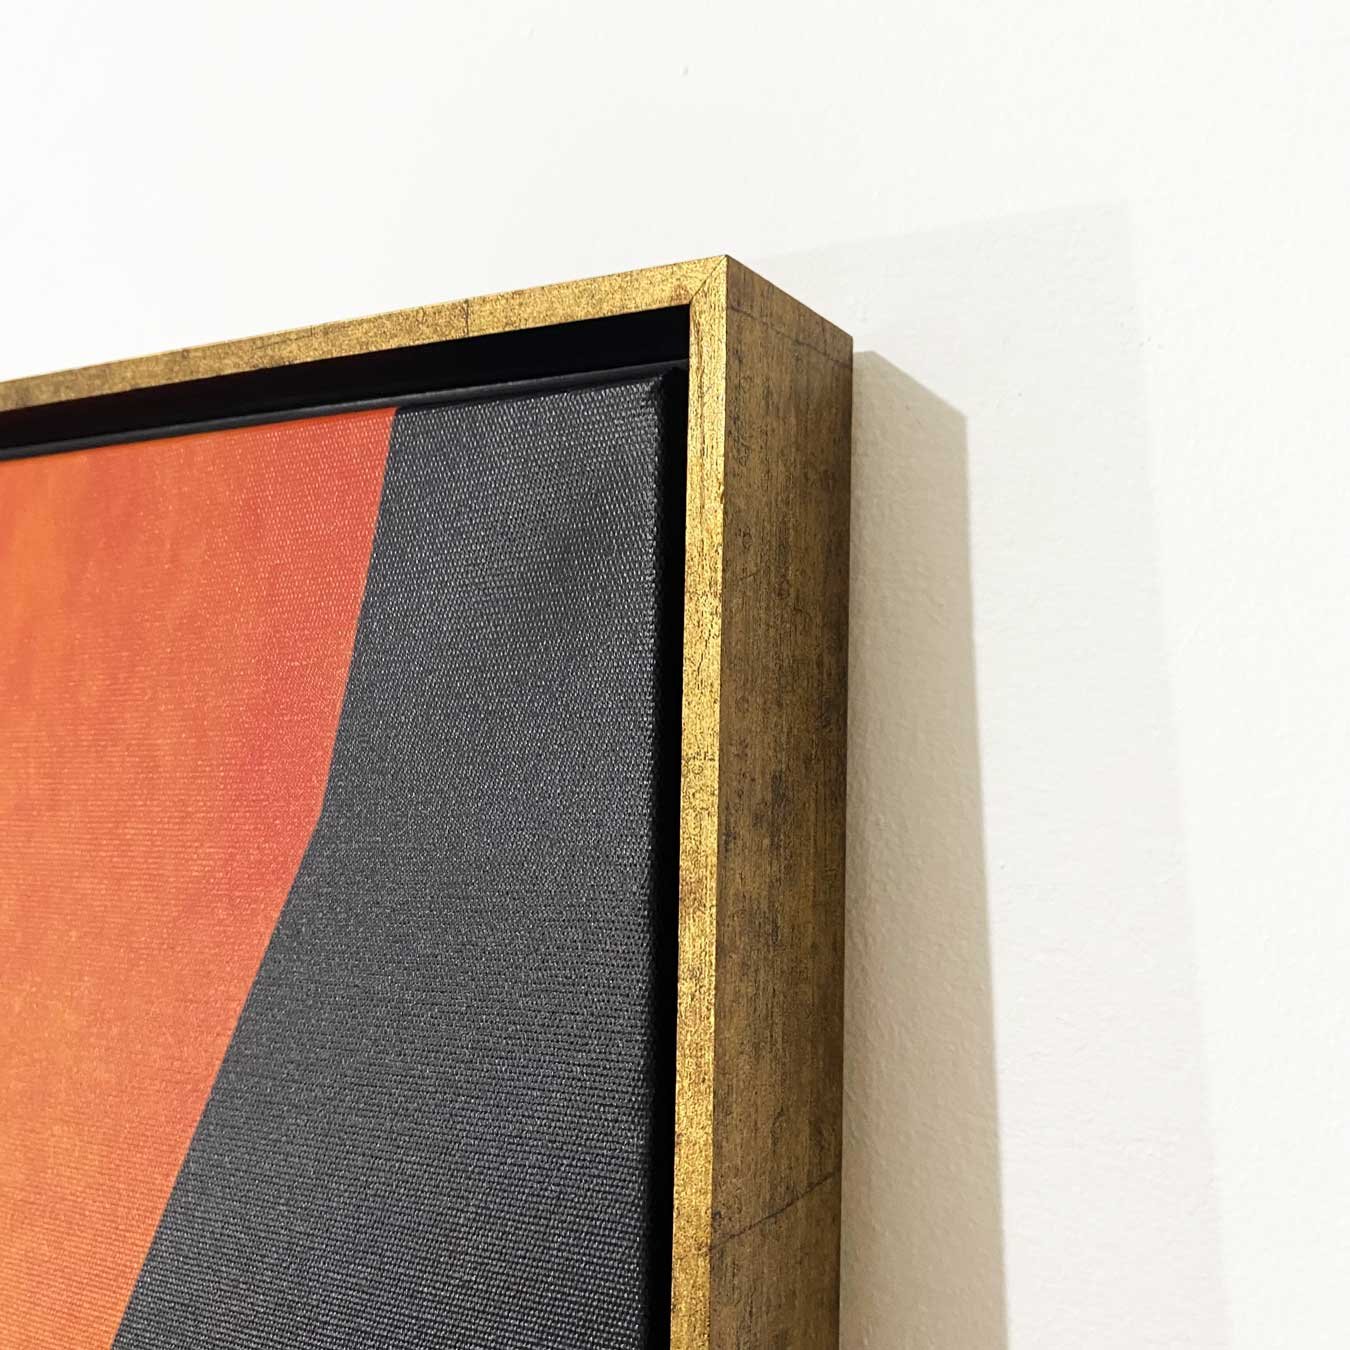 Tela Decorativa: Arte Abstrata Geométrica Colorida, Moldura Dourada - Estilo Moderno